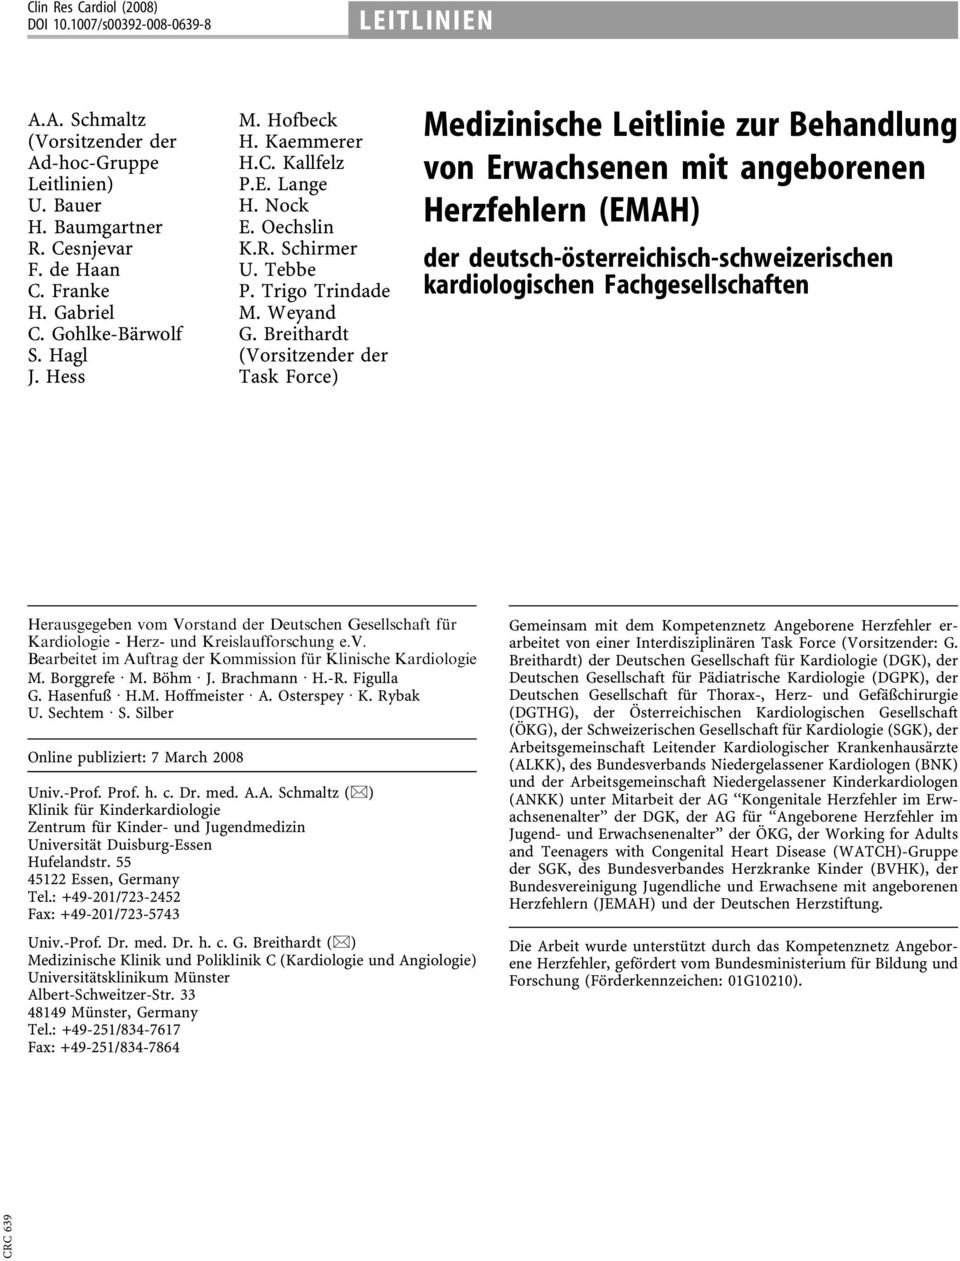 Breithardt (Vorsitzender der Task Force) Medizinische Leitlinie zur Behandlung von Erwachsenen mit angeborenen Herzfehlern (EMAH) der deutsch-österreichisch-schweizerischen kardiologischen